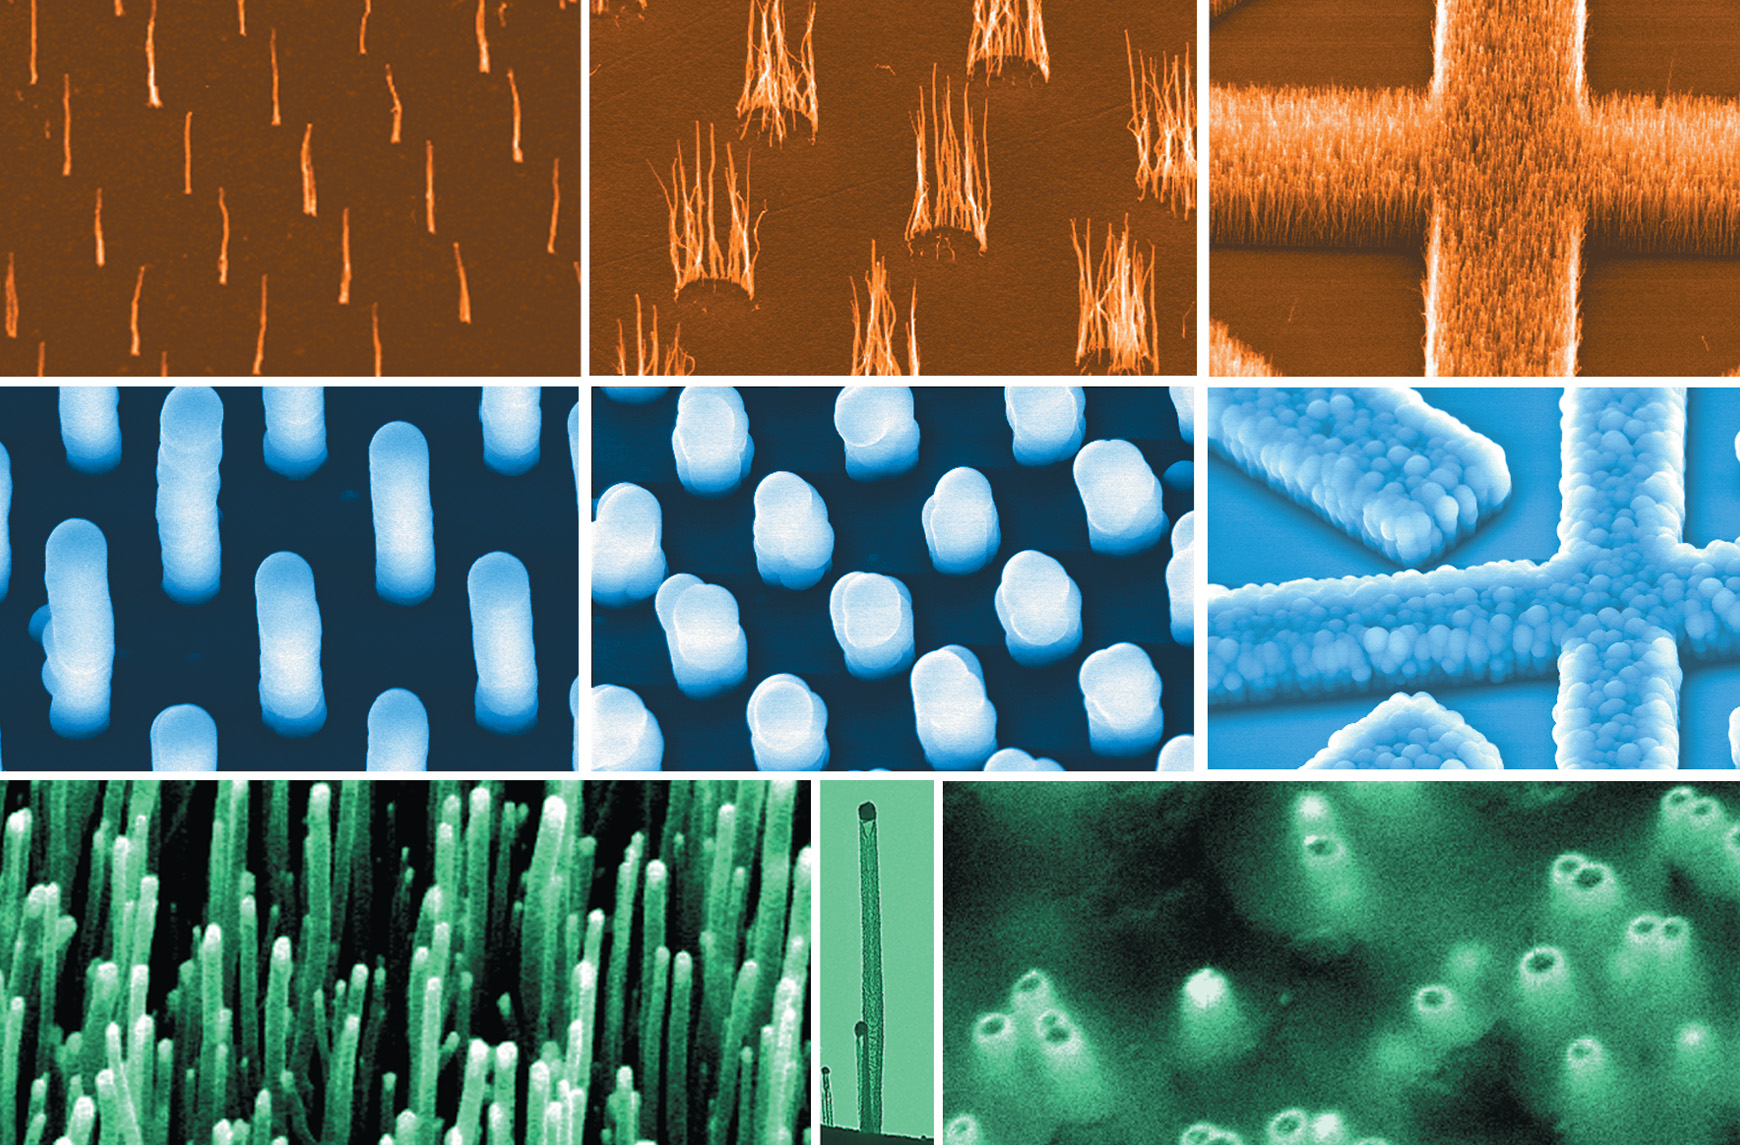 Des nanostructures à base de nanotubes de carbone